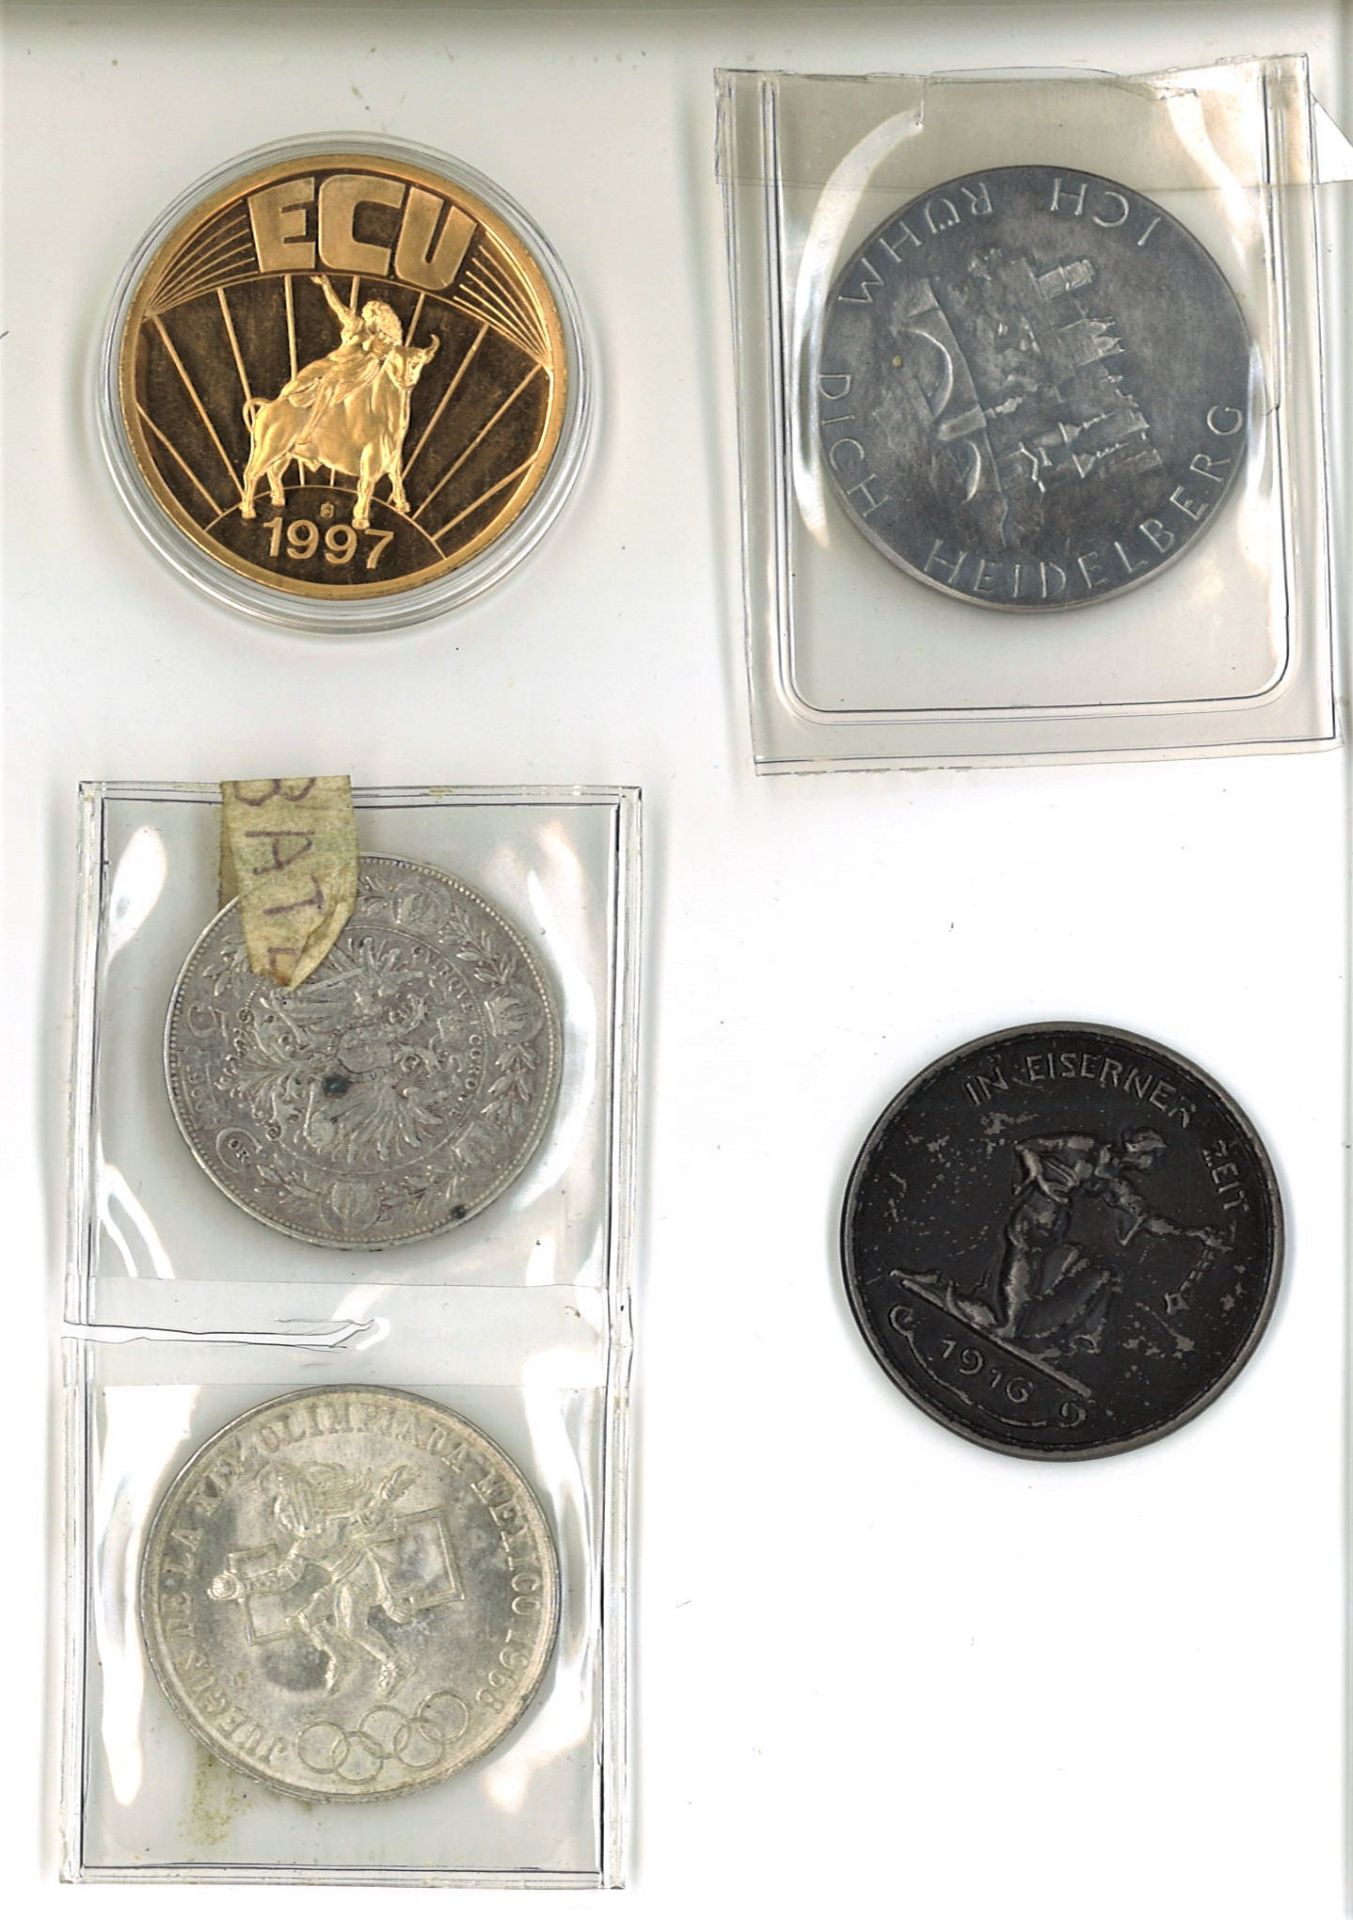 Lot Münzen und Medaillen, dabei Silber Mexiko, Österreich, etc. - Image 2 of 2